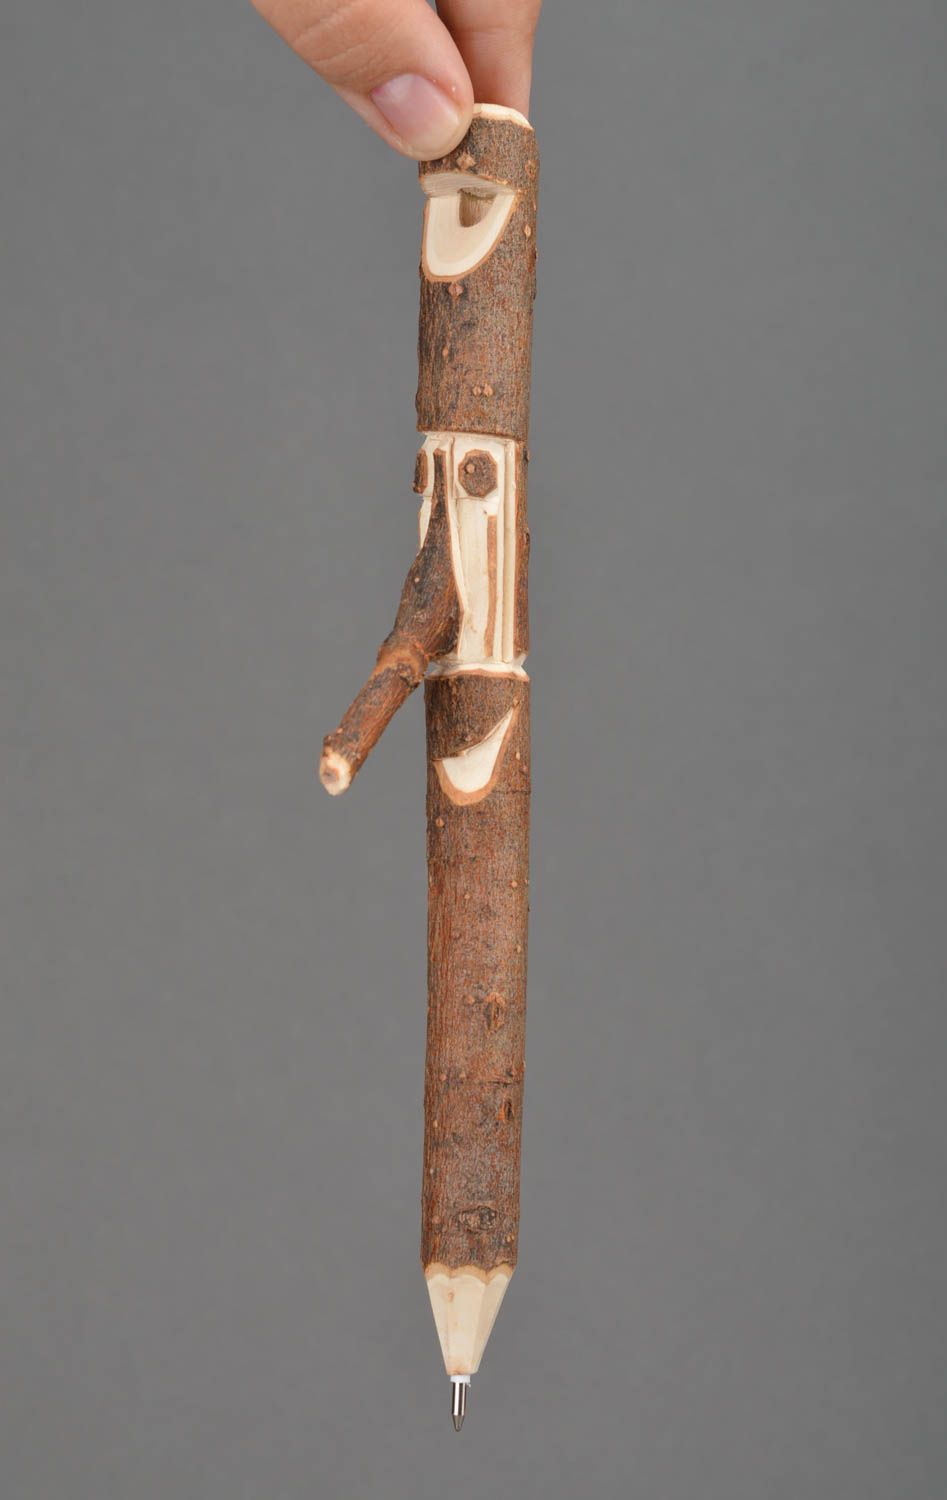 Деревянная ручка-свисток ручной работы оригинальная в эко-стиле необычная фото 2